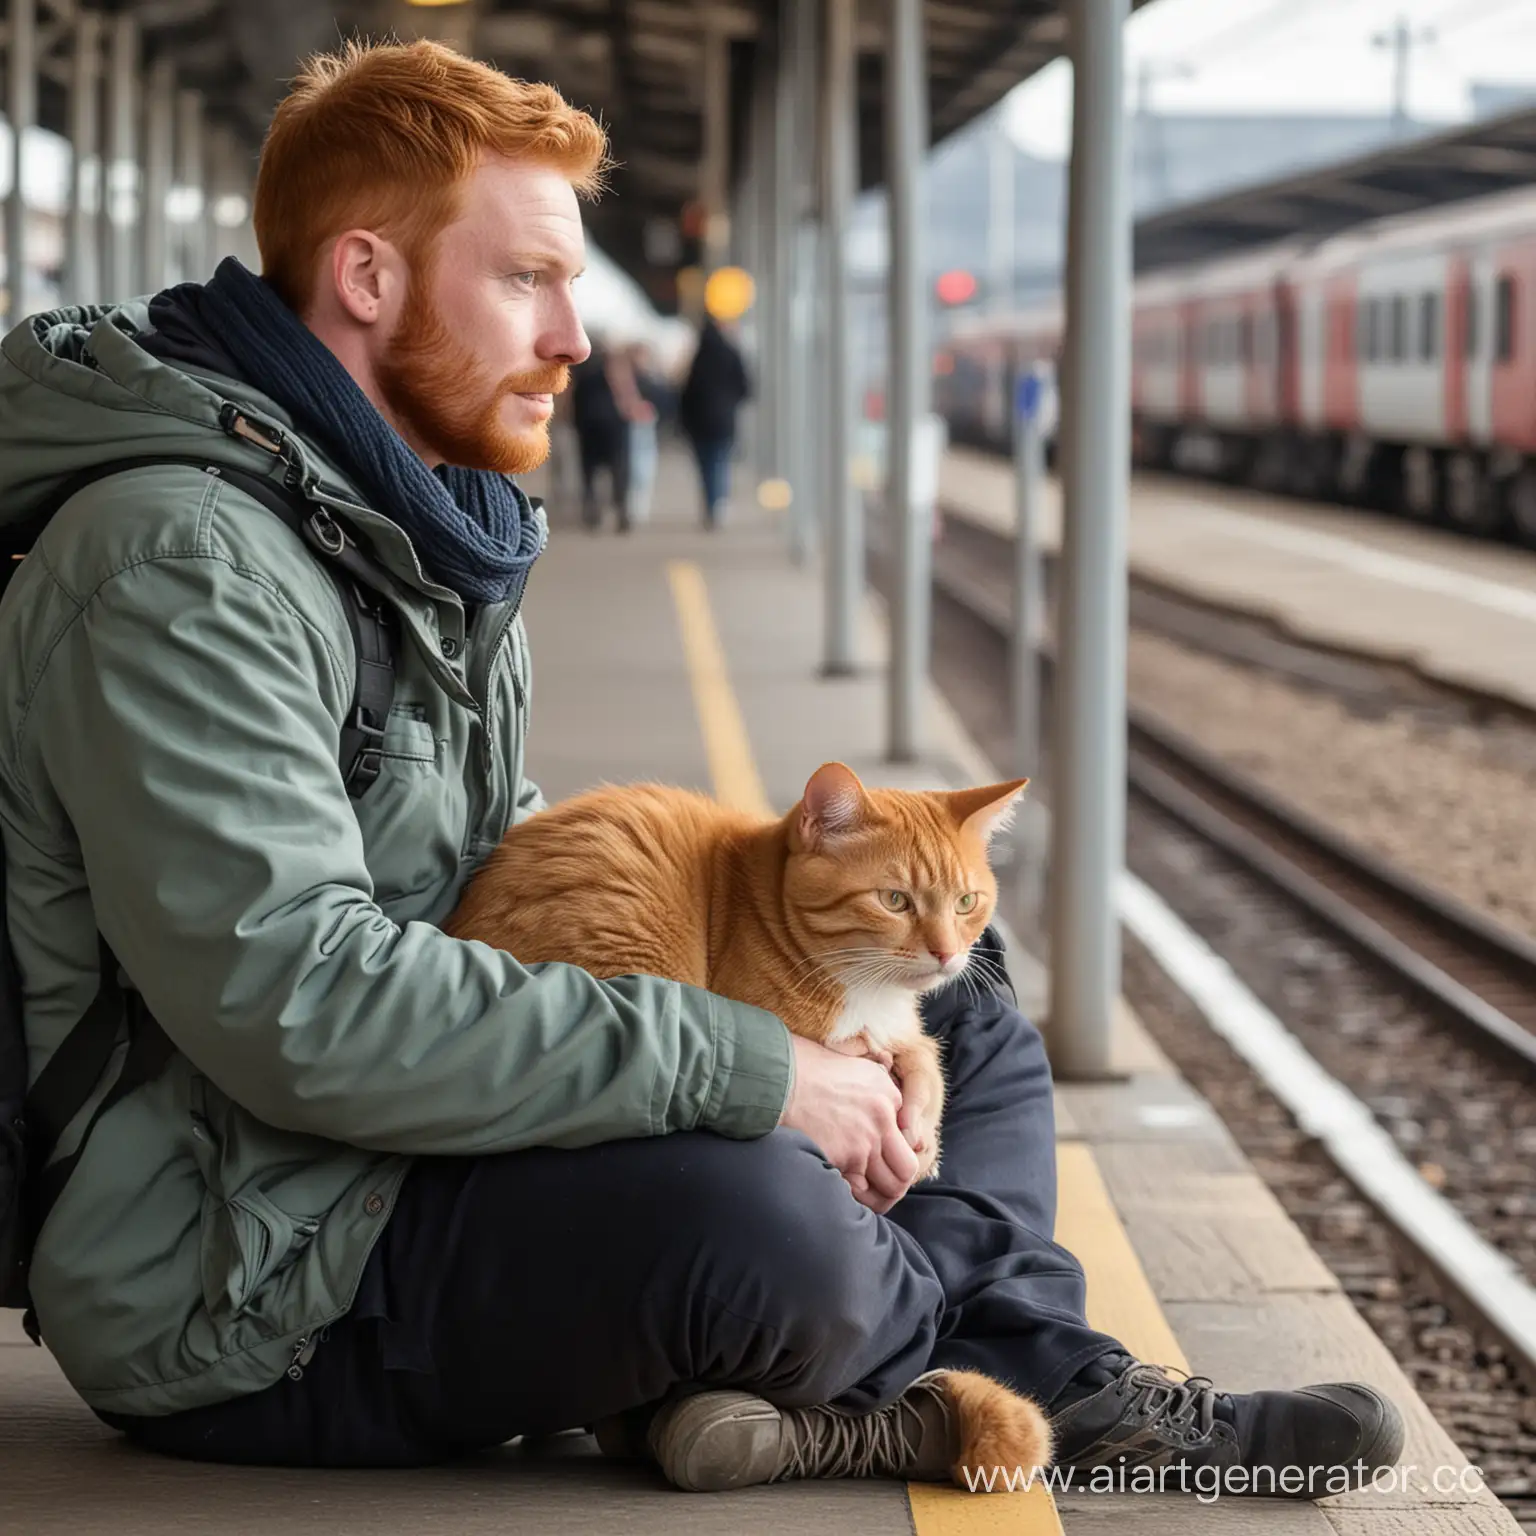 Мужчина с  молодым рыжим котиком который находиться в специальной кошачьей переноске сидят на железнодорожном вокзале в ожидании поезда